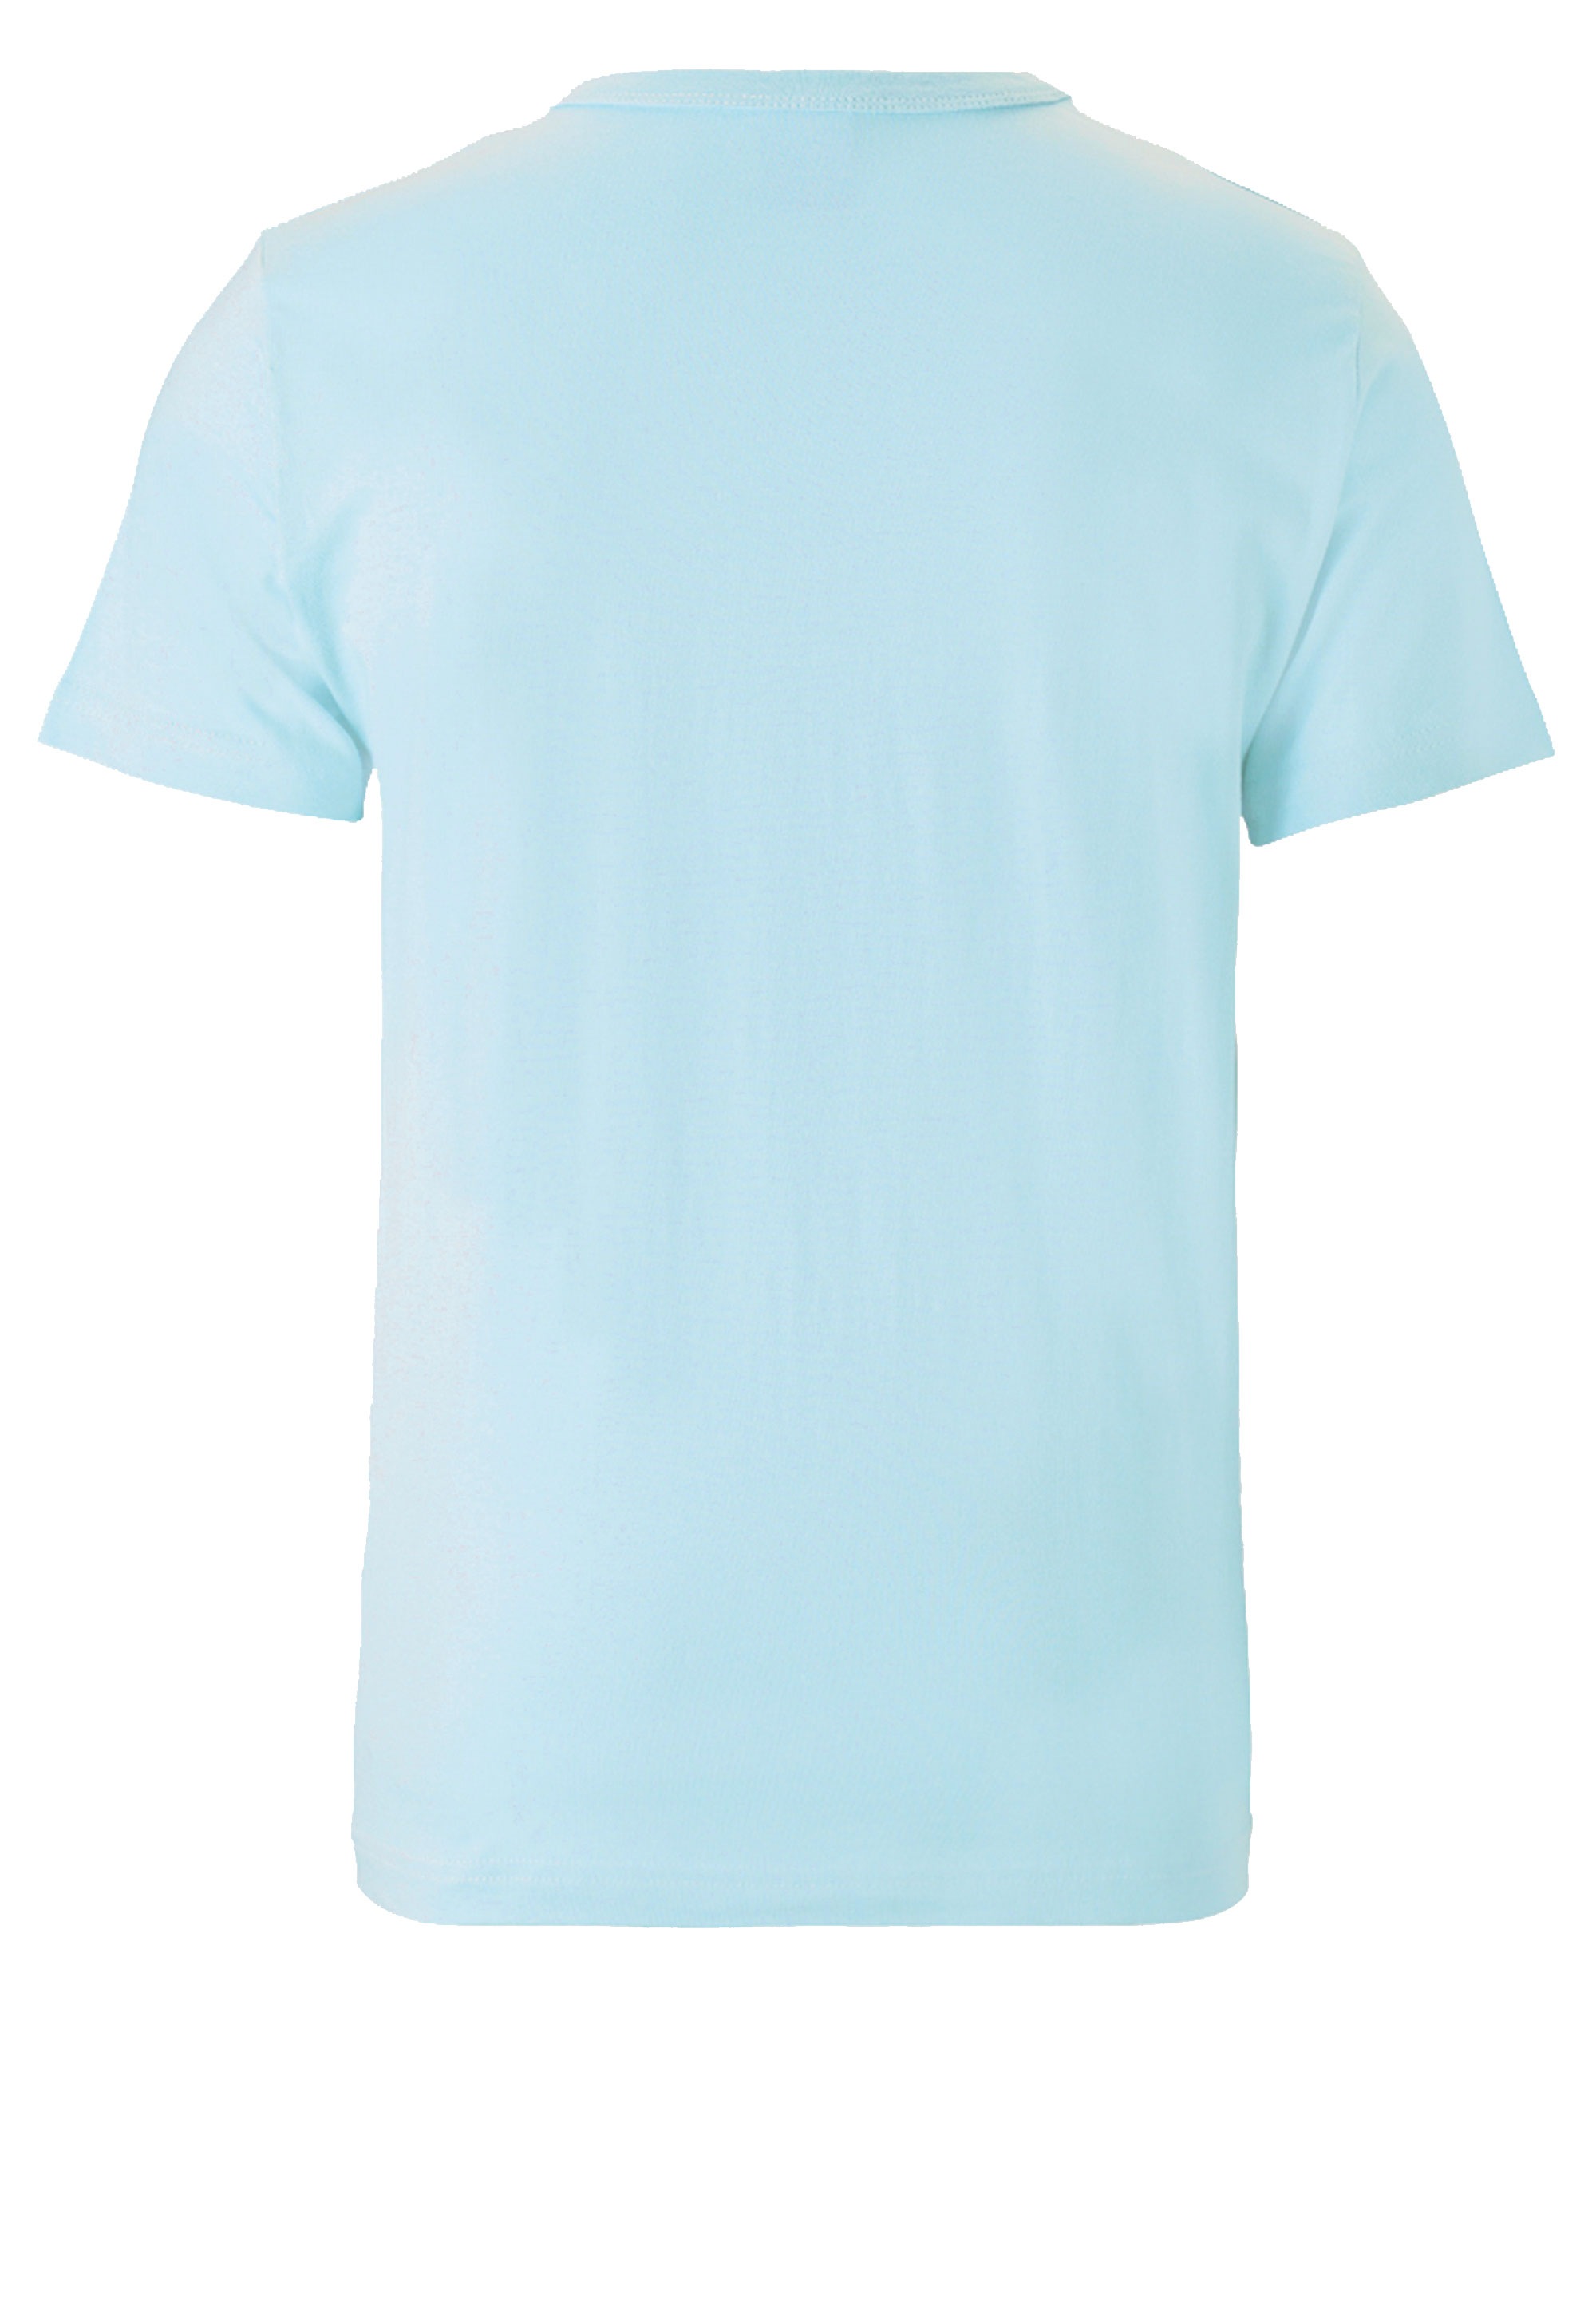 »Krümelmonster«, LOGOSHIRT mit kaufen Originalddesign T-Shirt lizenziertem